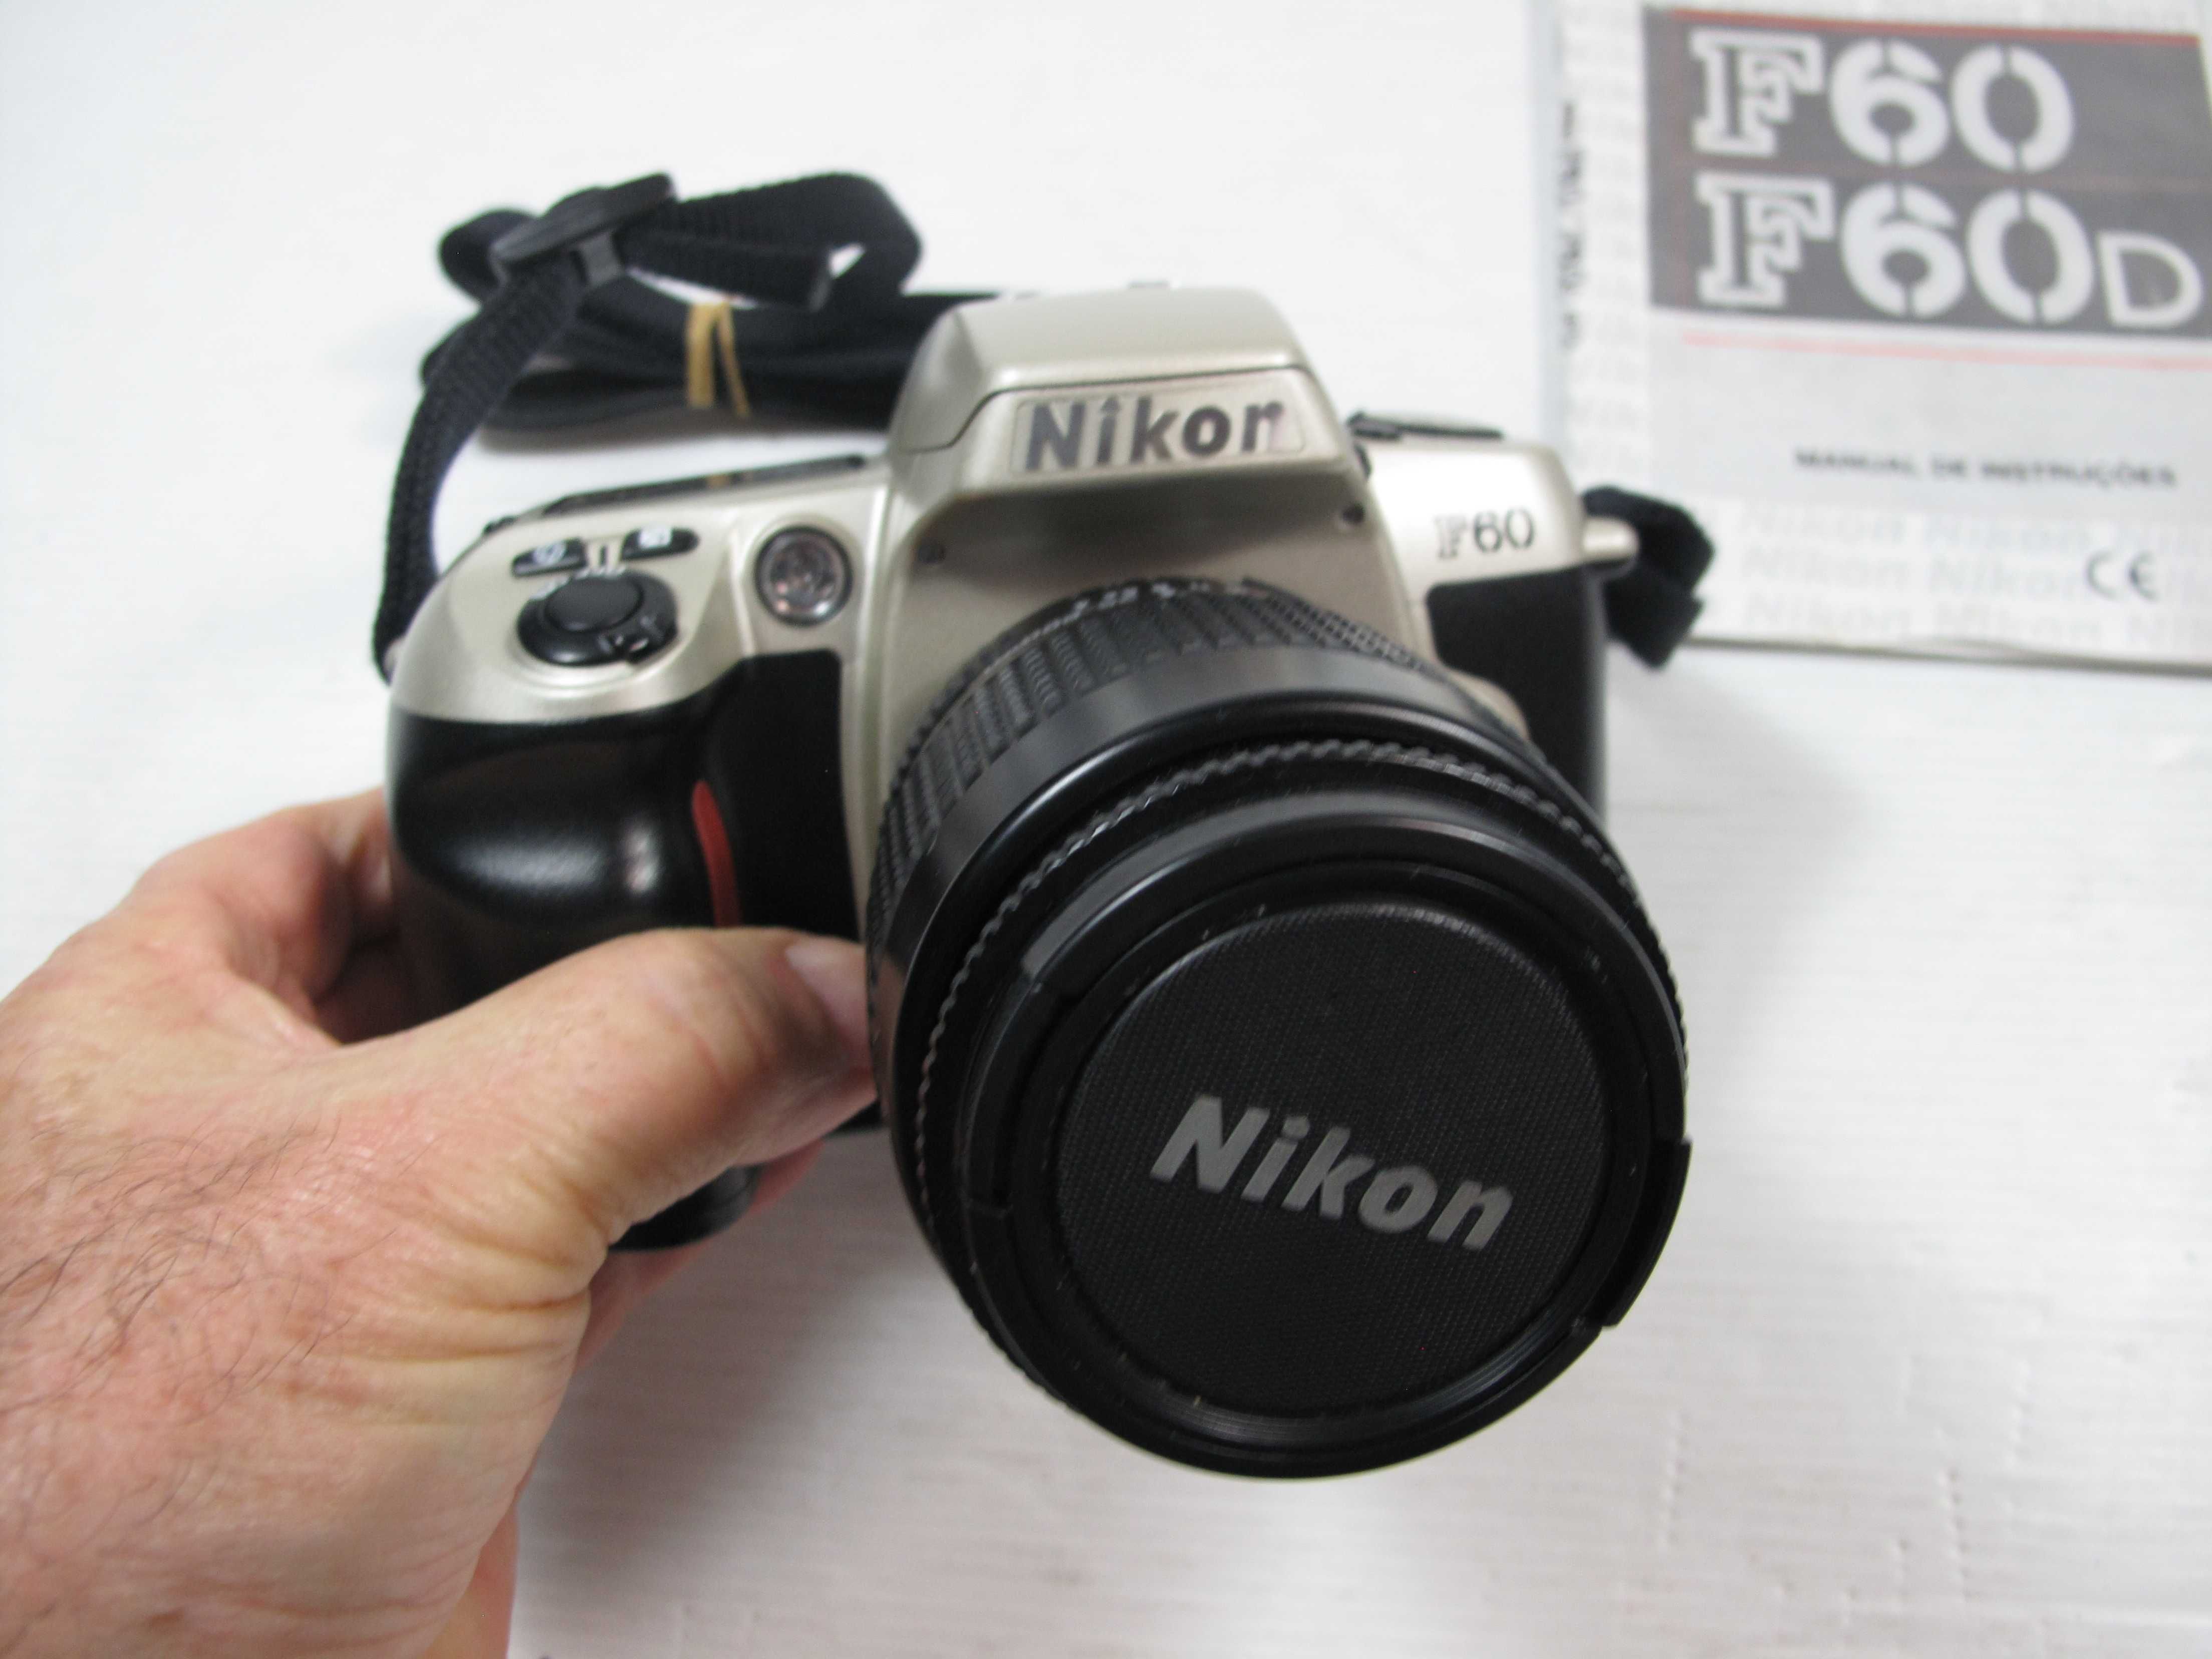 Nikon F60+35-80 excelente conforme conforme se pode ver nas fotos